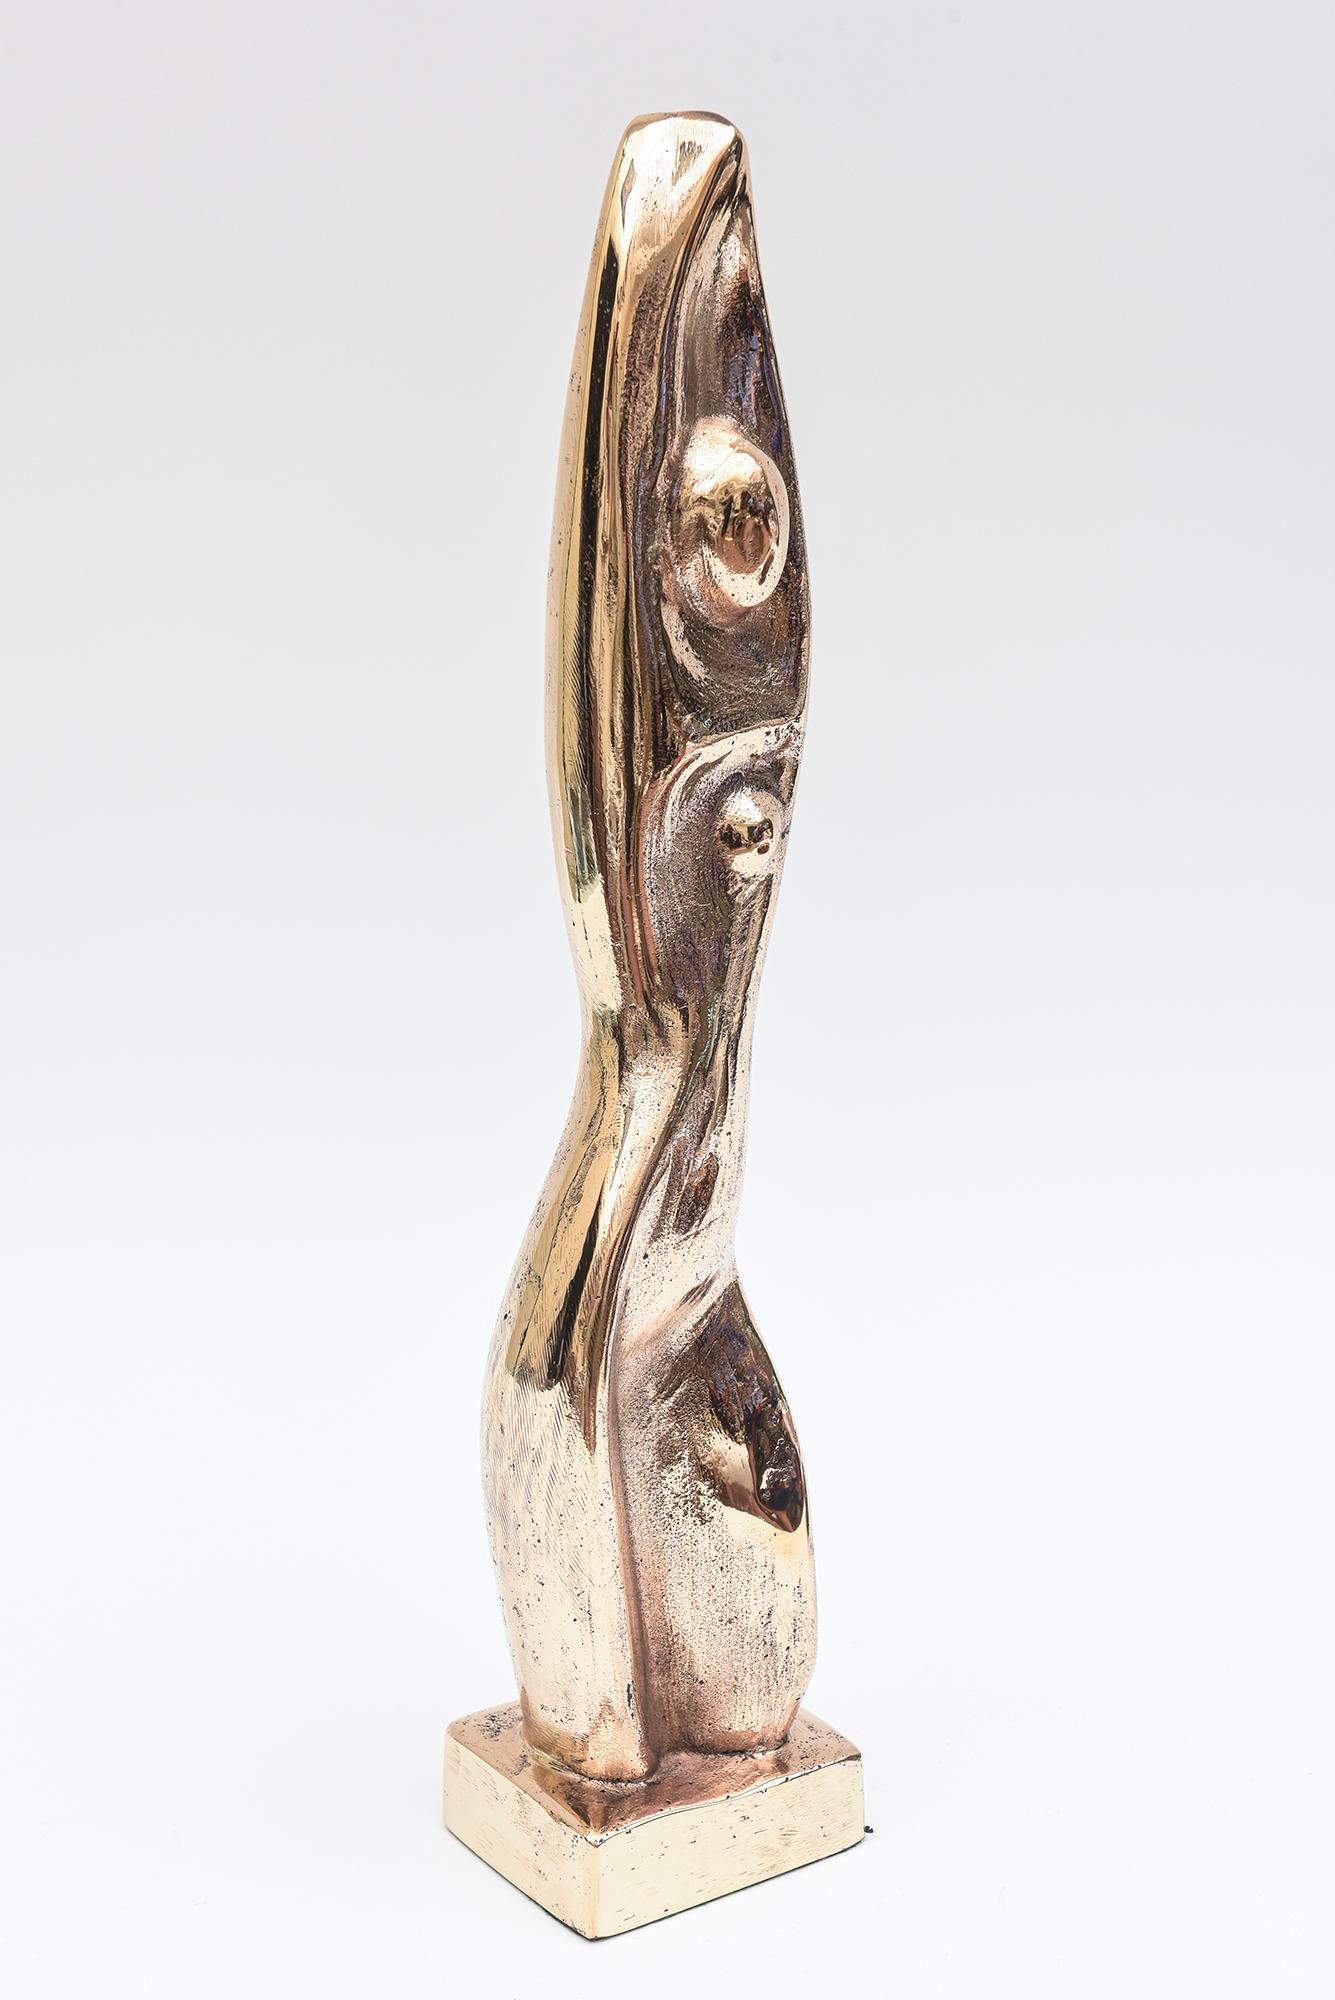 Diese sehr sinnliche, schwere Bronzeskulptur erinnert an Constantin Brancusi und Jean Arp. Es ist eine abstrakte und figurative weibliche Form in Ruhe und Pose. Er ist zurückhaltend und elegant. Der Bronze wohnt eine tiefe Sinnlichkeit inne. Der